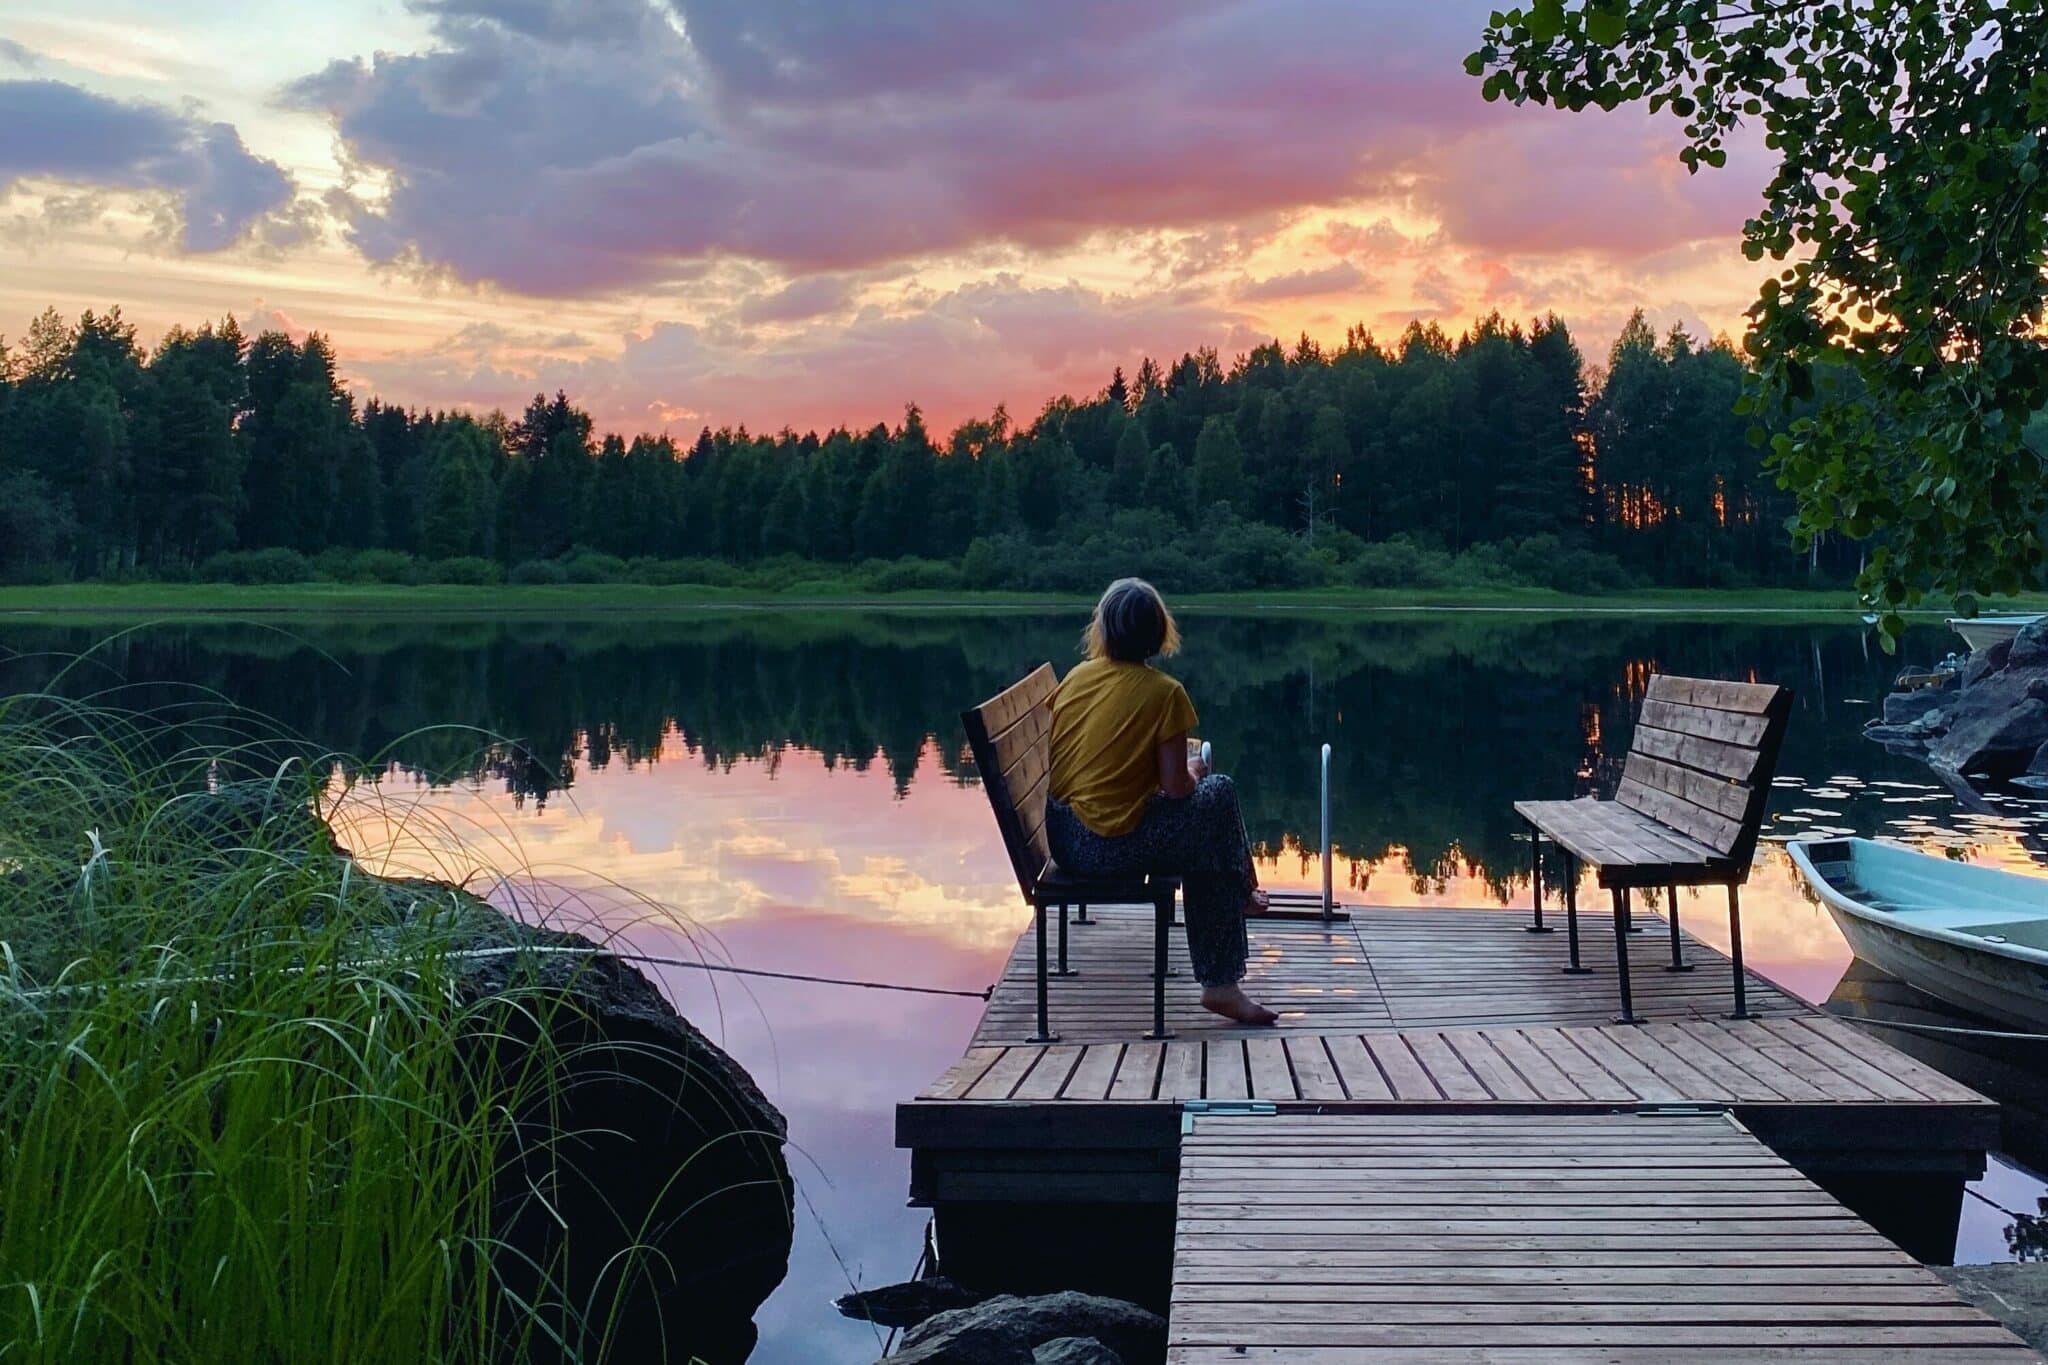 Op de foto zit een vrouw op een bankje op een steiger. Op de achtergrond zie je een meer en daarboven een roze gekleurde zonsondergang.